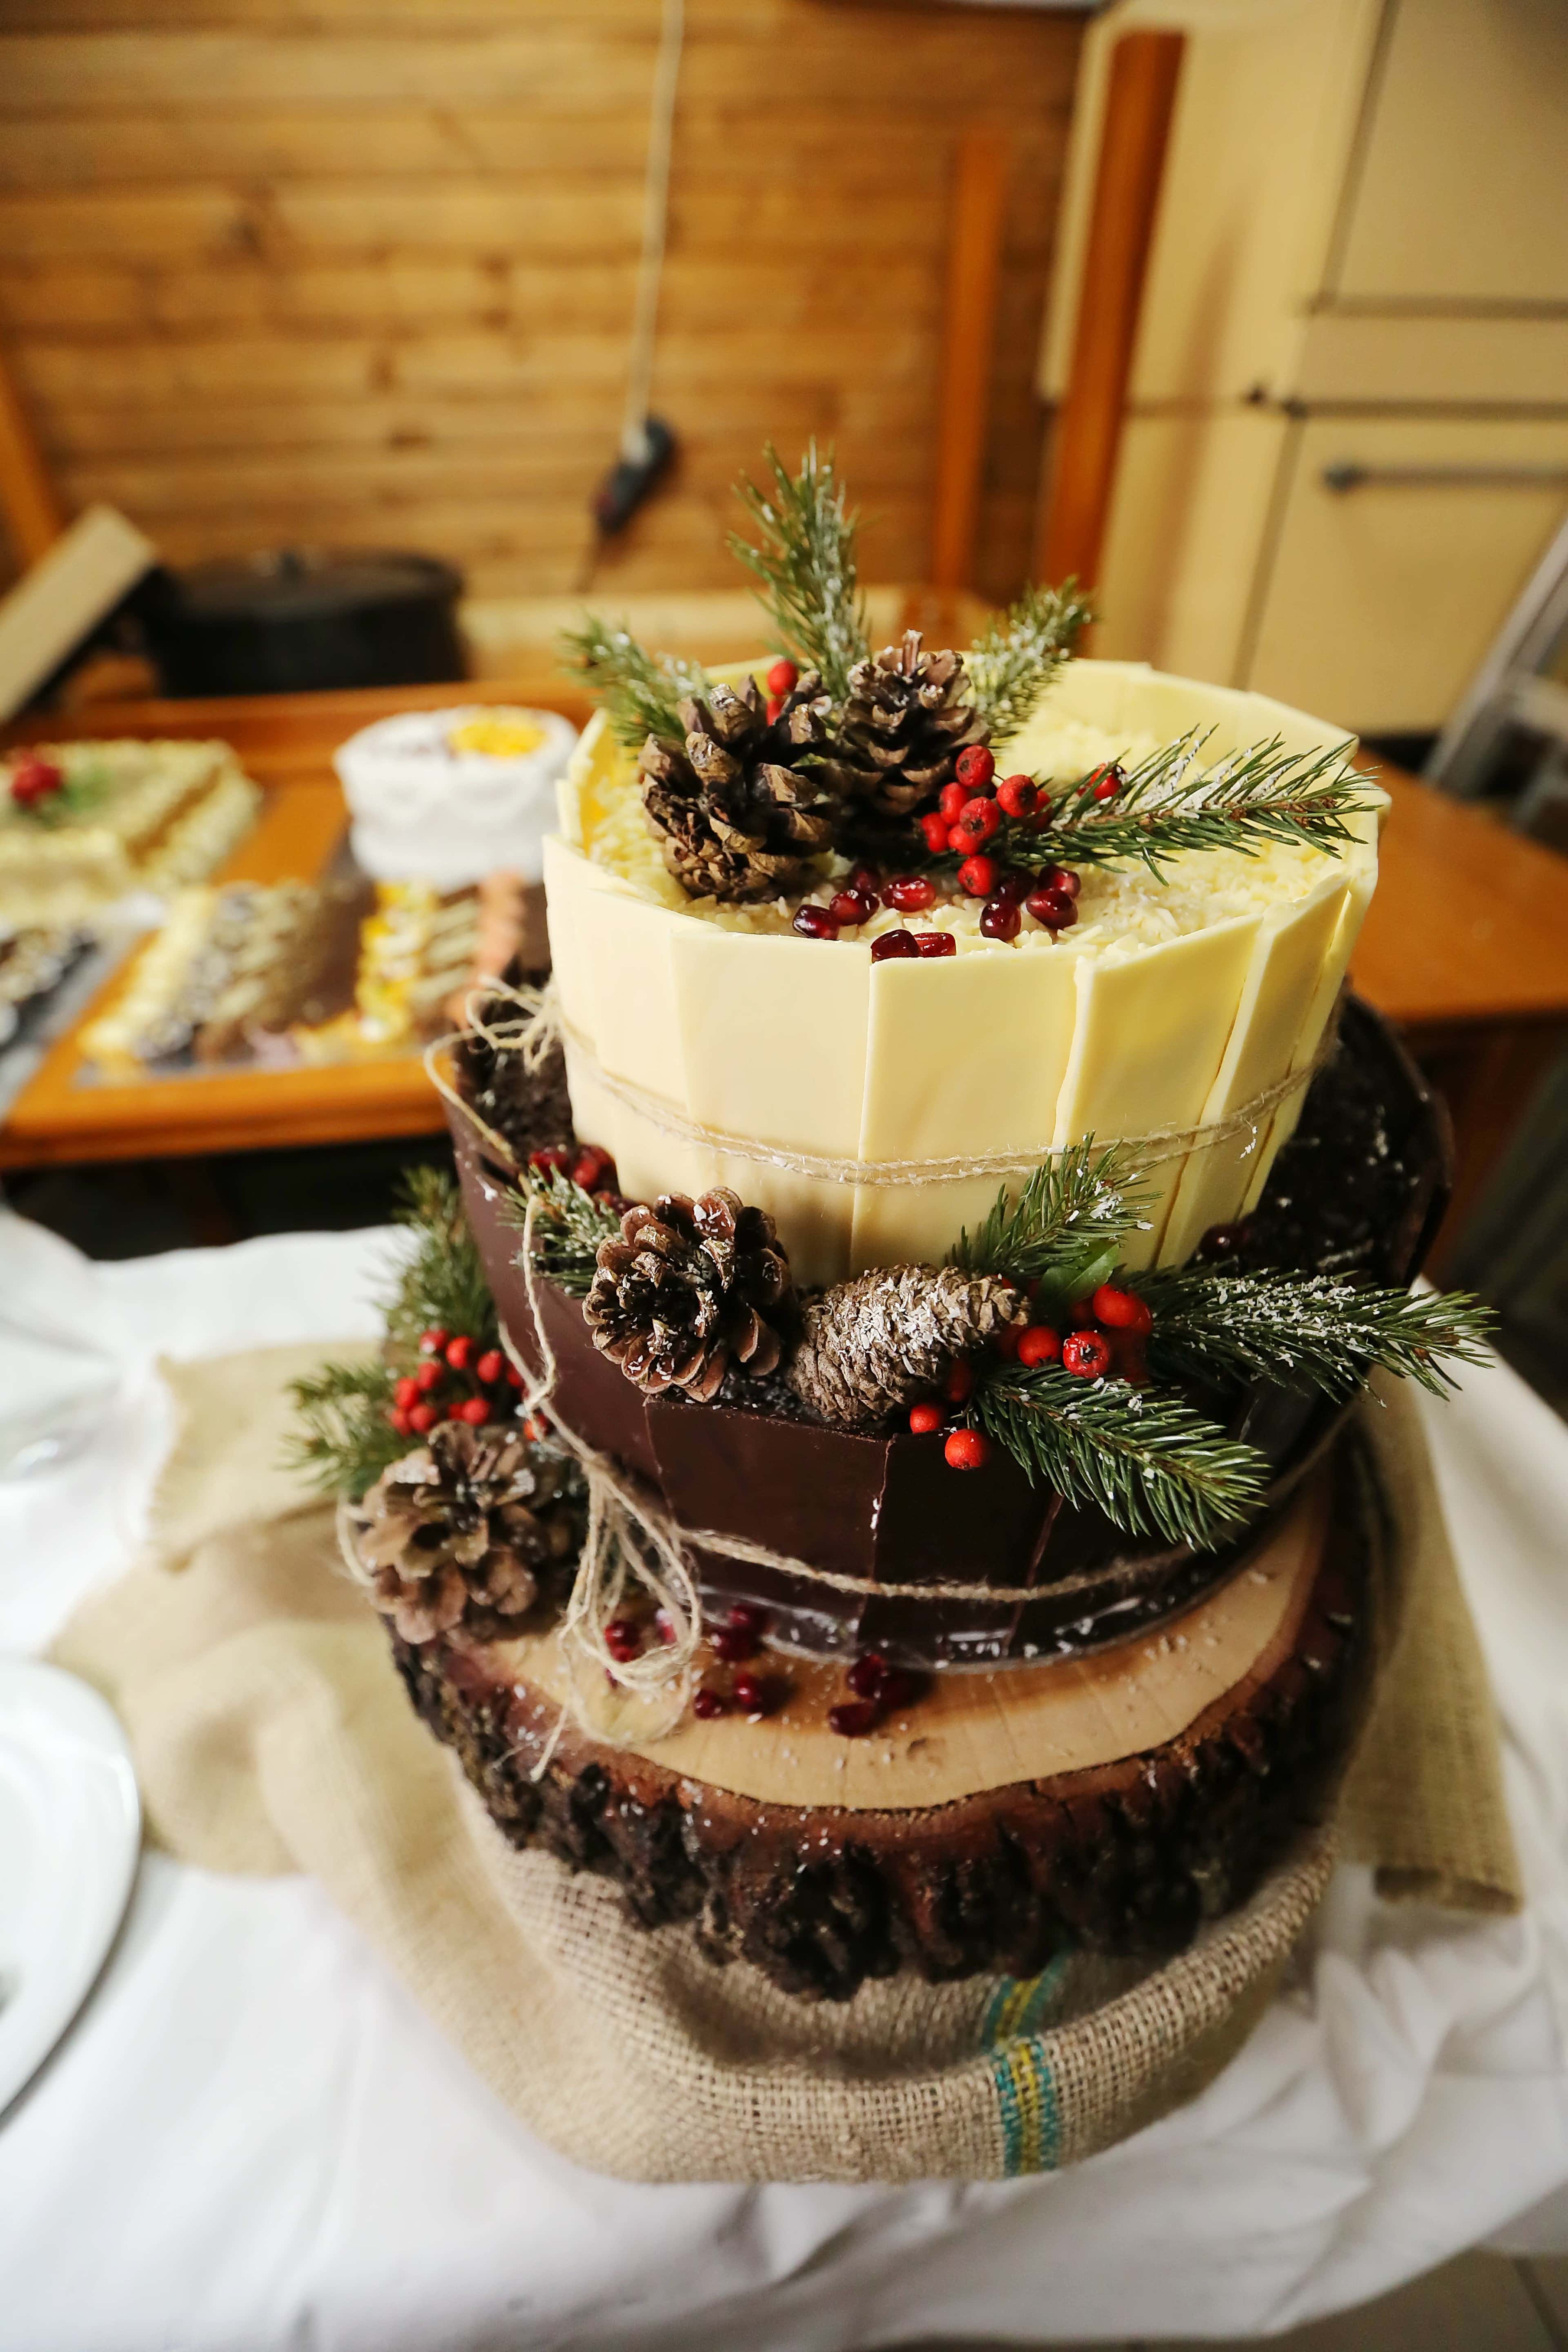 フリー写真画像 装飾的です ケーキ クリスマス お祝い 休日 ベリー 食品 チョコレート おいしい 砂糖